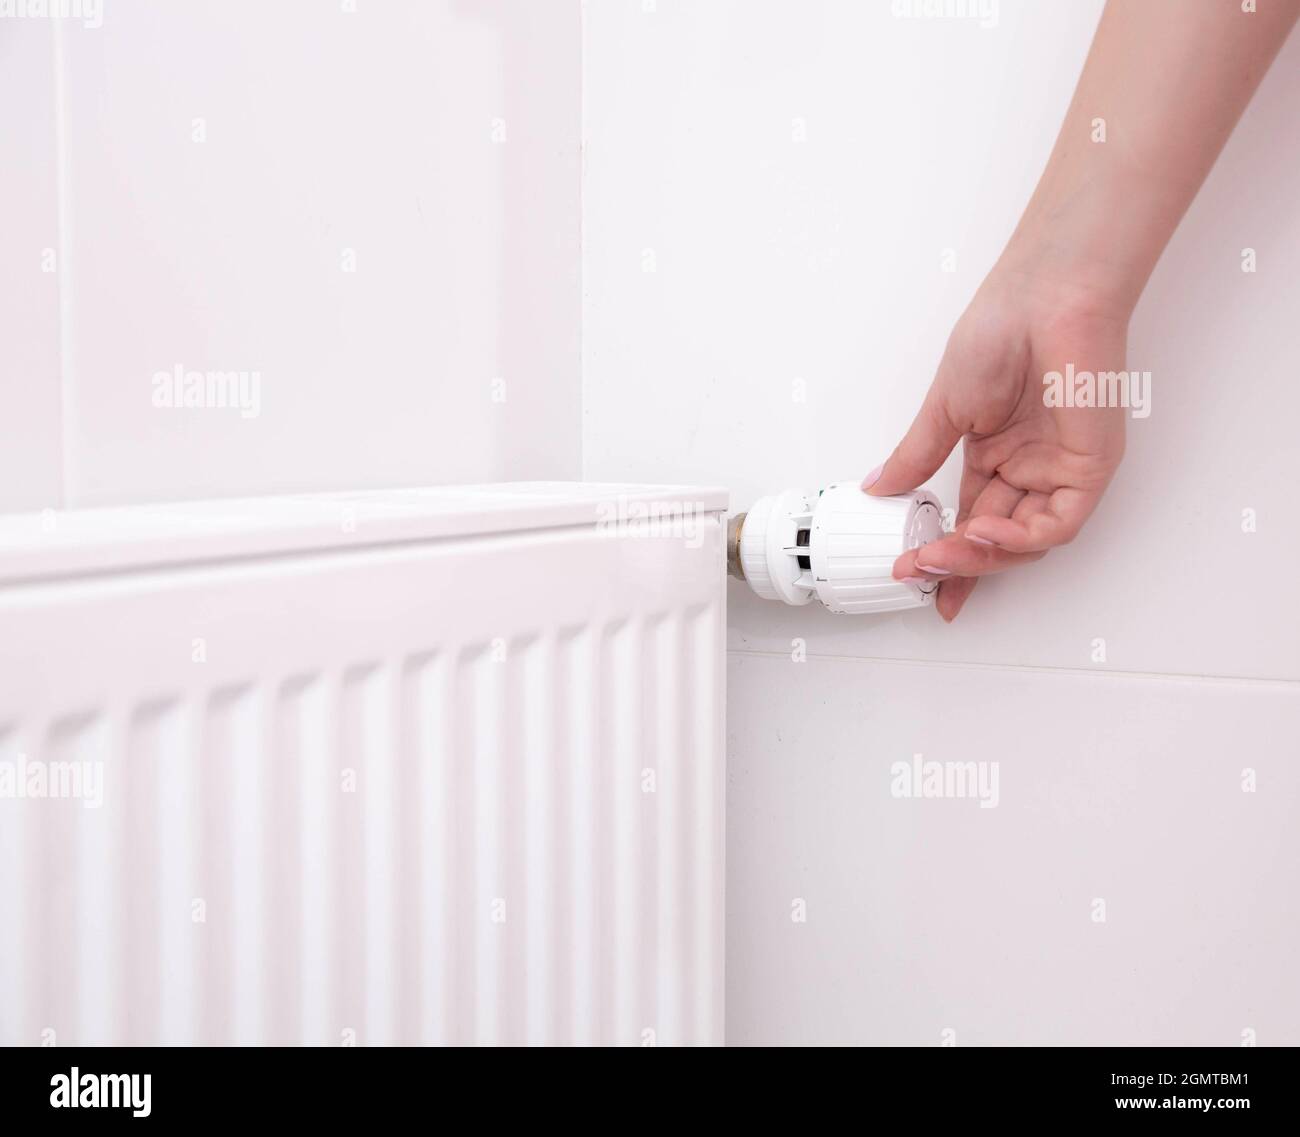 Una mano de mujer sostiene el mango del termostato de calefacción. Concepto  de coste del servicio de calefacción, aumento de precio de la utilidad  Fotografía de stock - Alamy